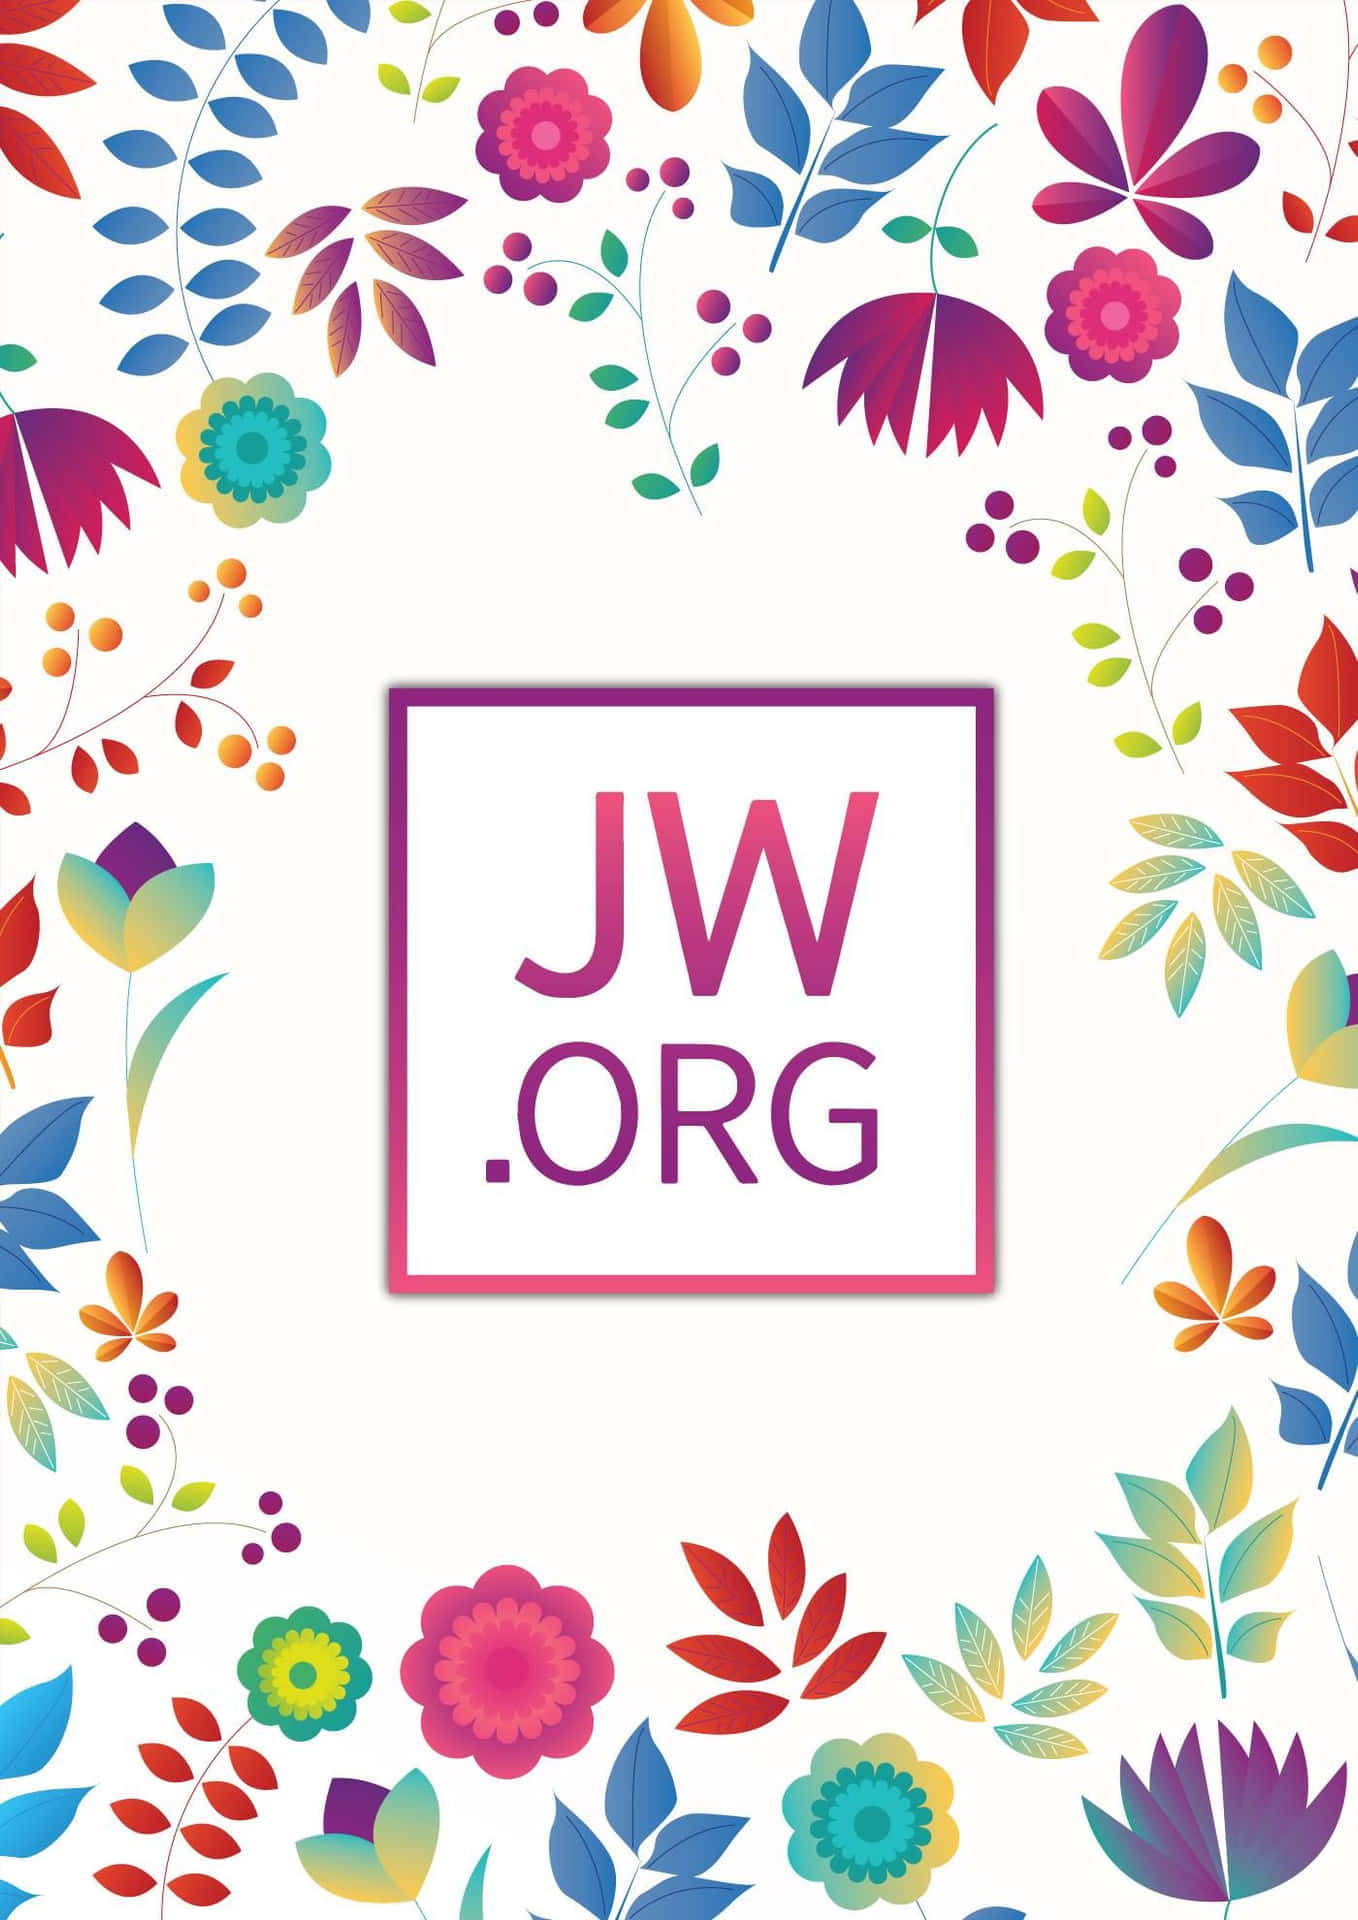 Logode Jworg Con Elementos Florales Fondo de pantalla